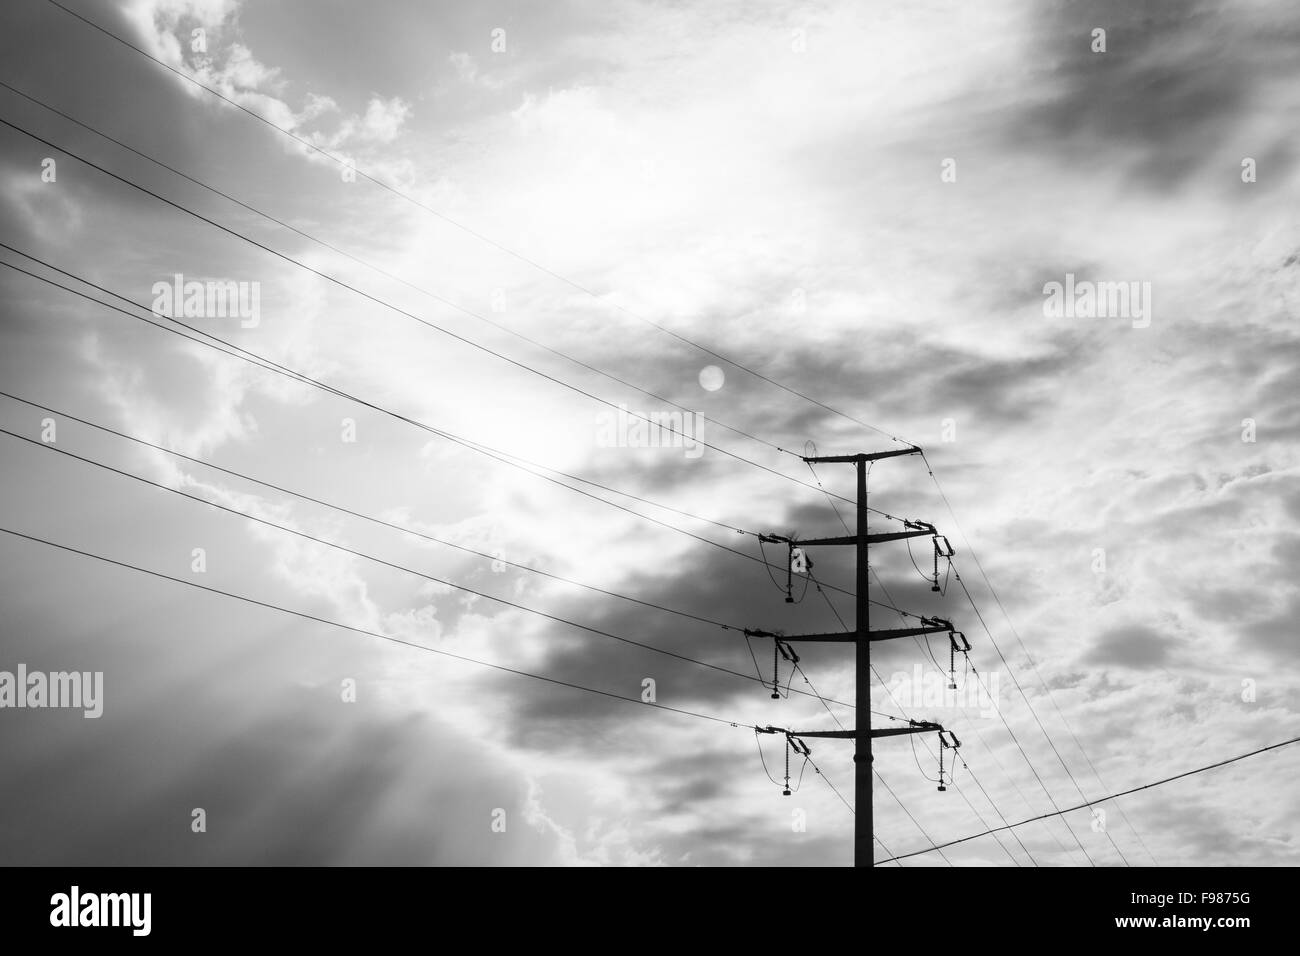 Strommast in bedrohlichen Wetterbedingungen, schwarze Wolken und die Sonne Stockfoto